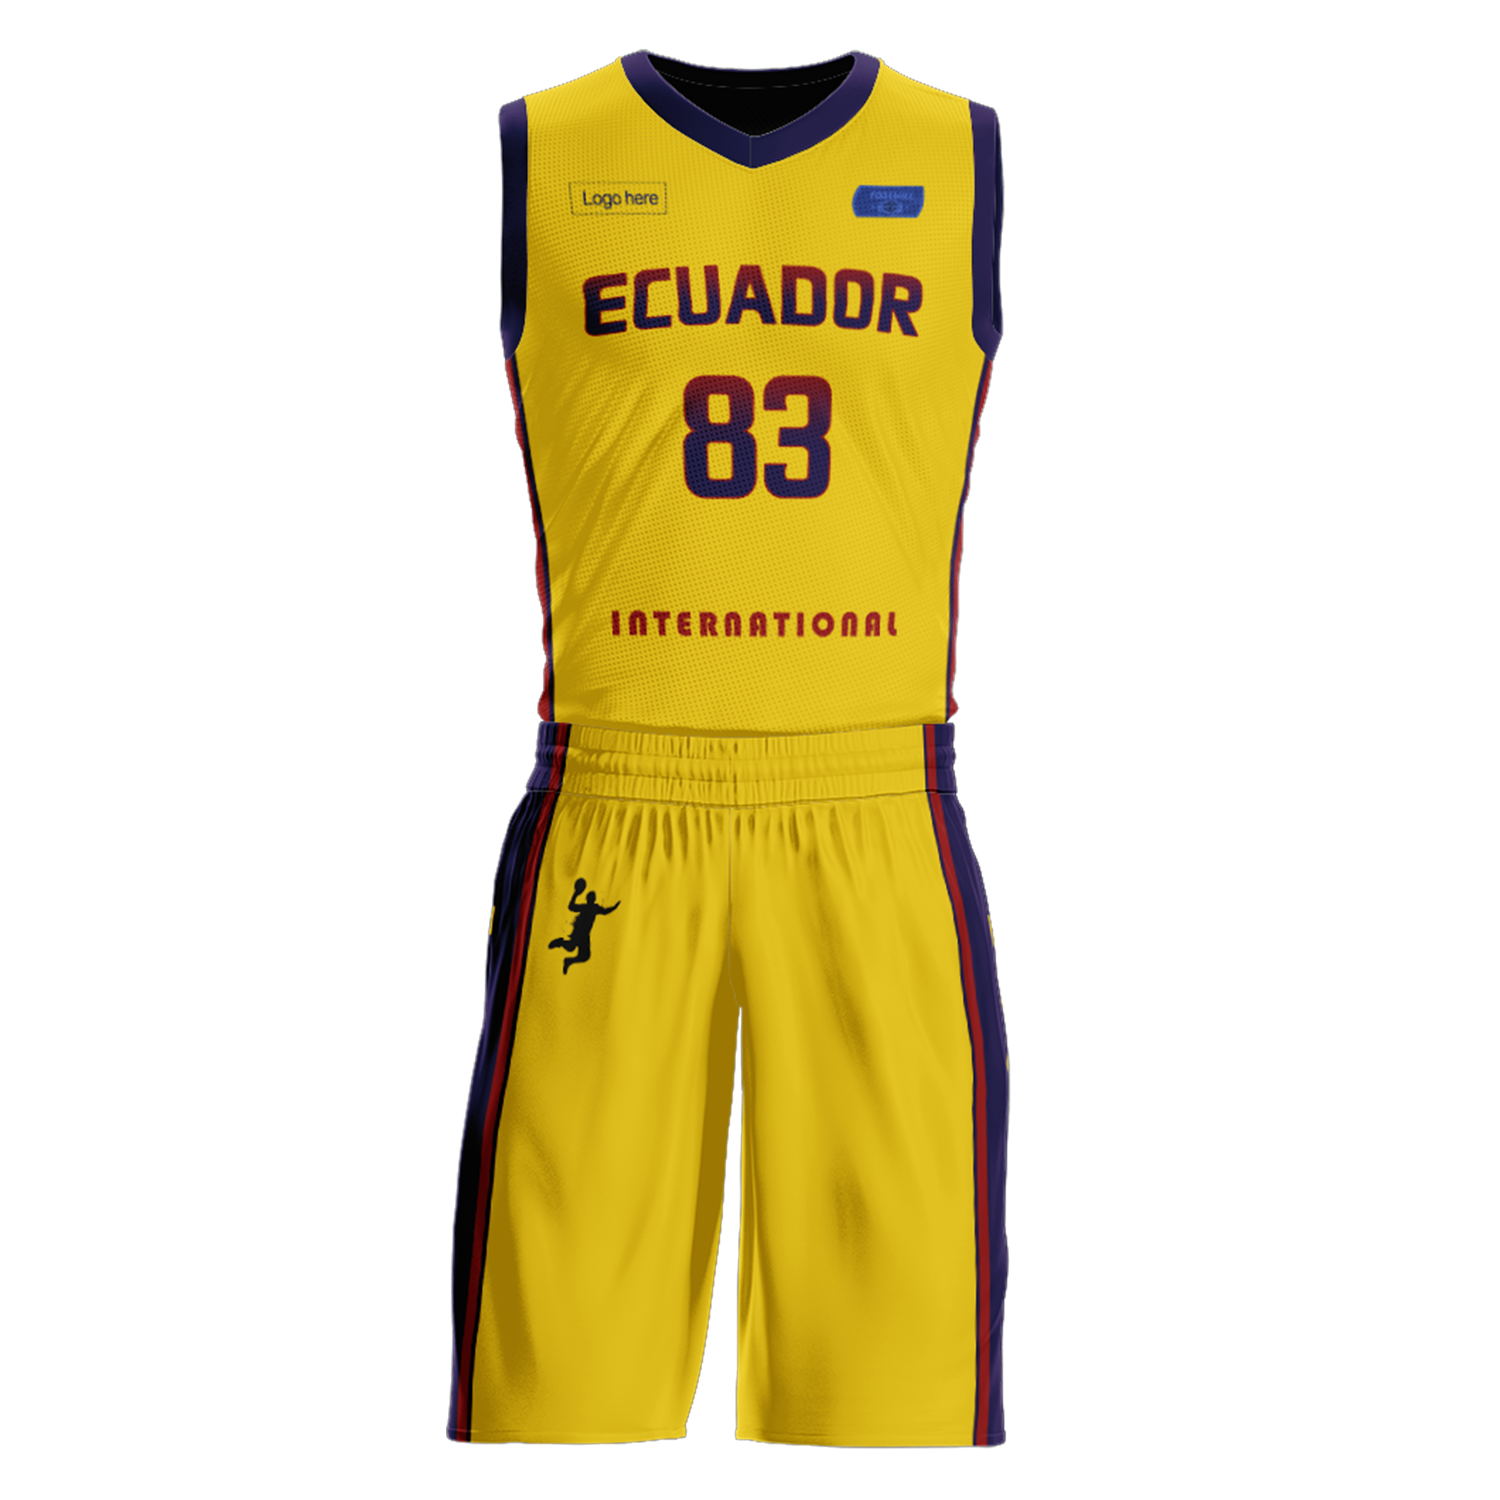 Trajes de baloncesto del equipo de Ecuador personalizados